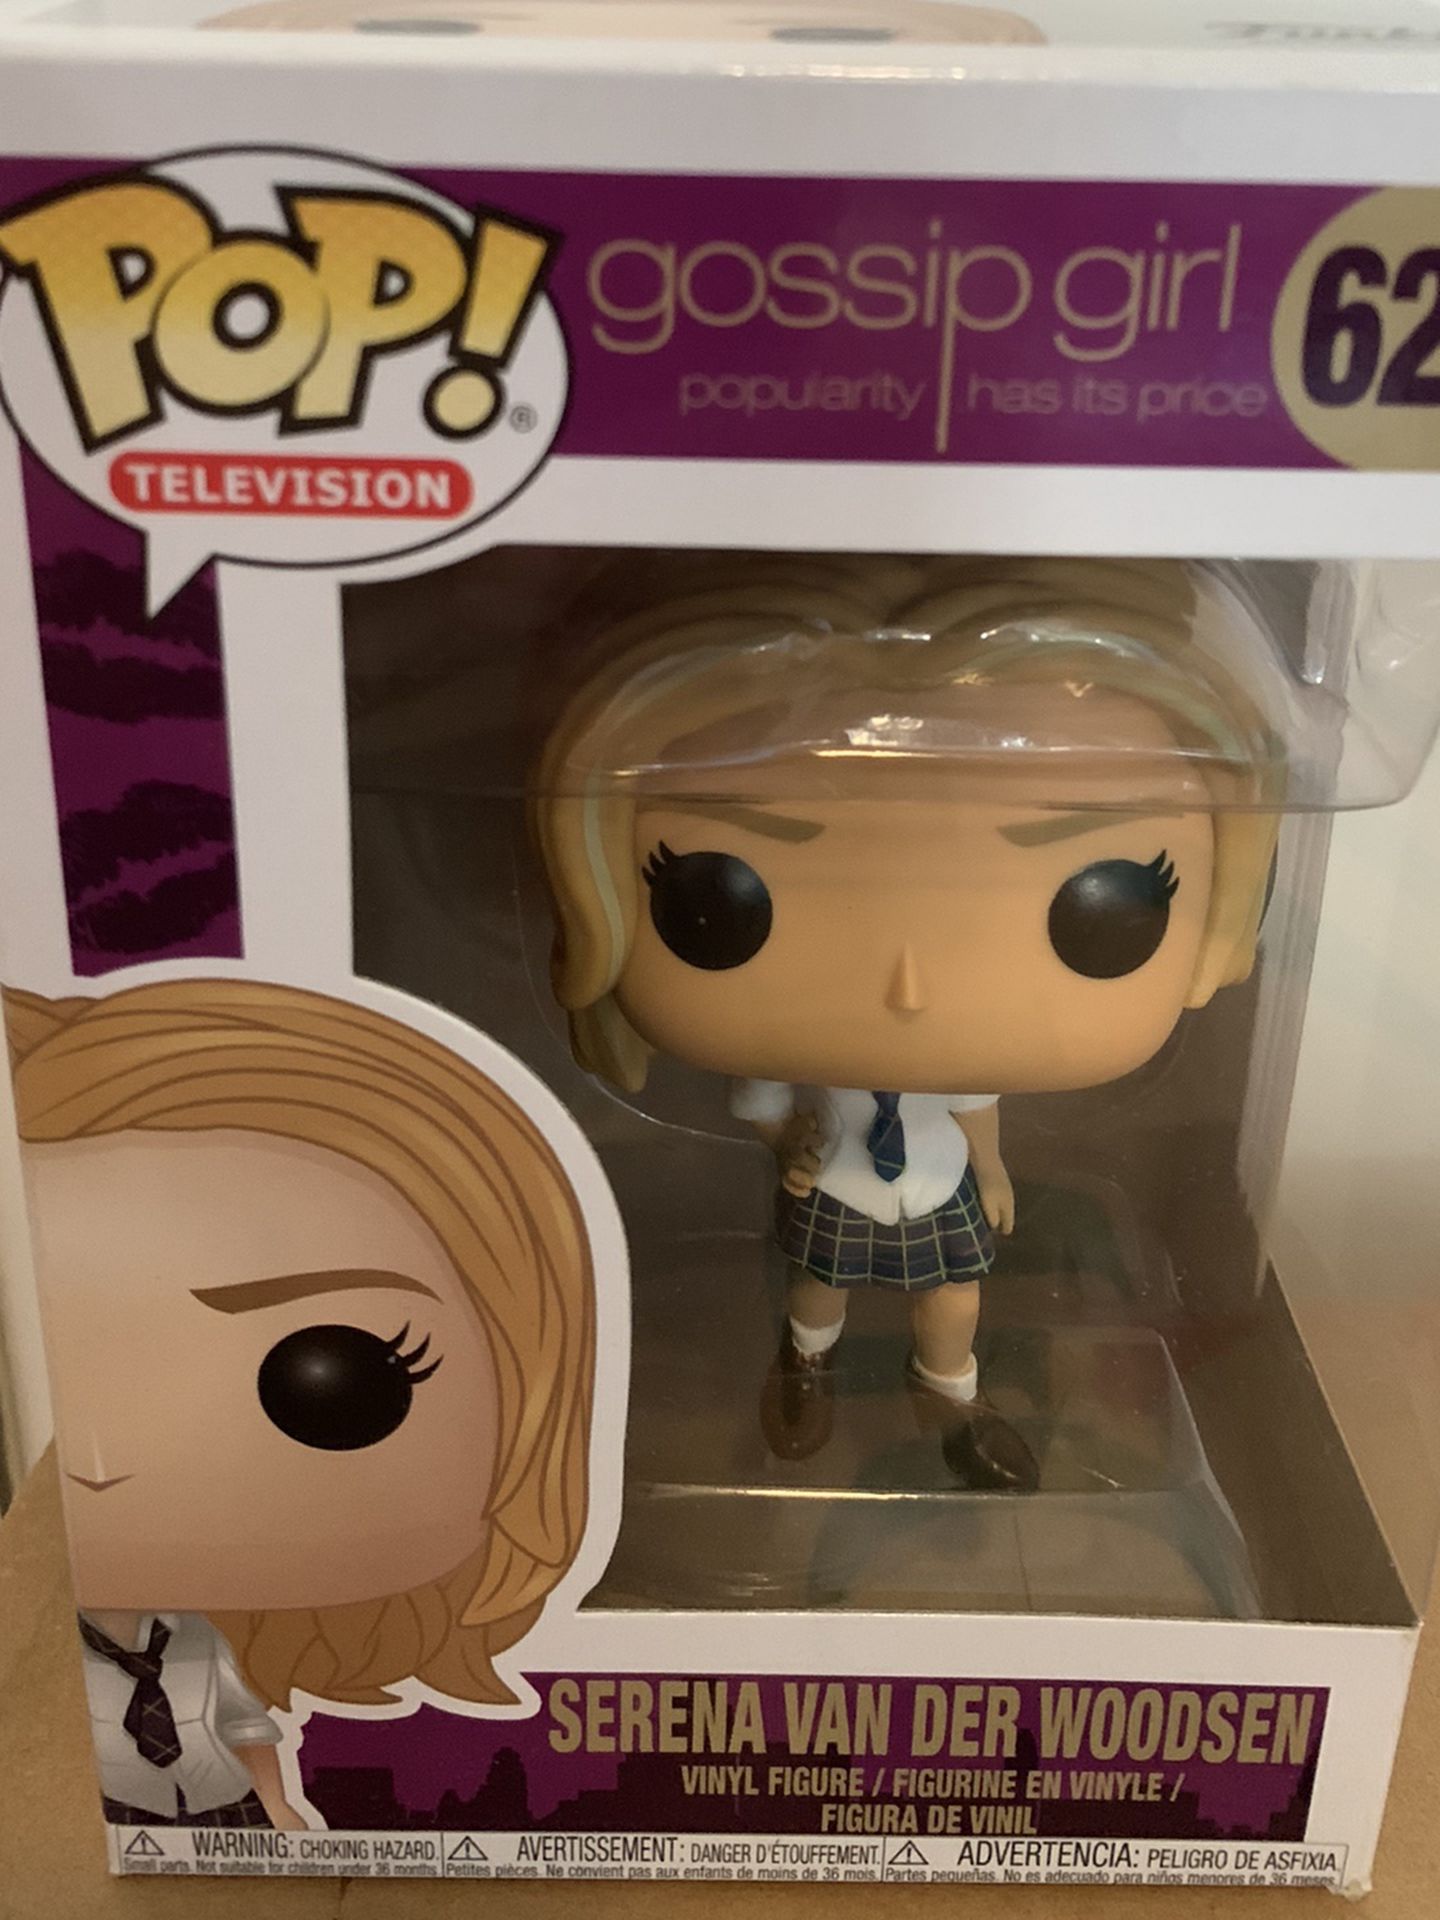 Gossip Girl Funko Pop for Sale in Long Beach, CA - OfferUp